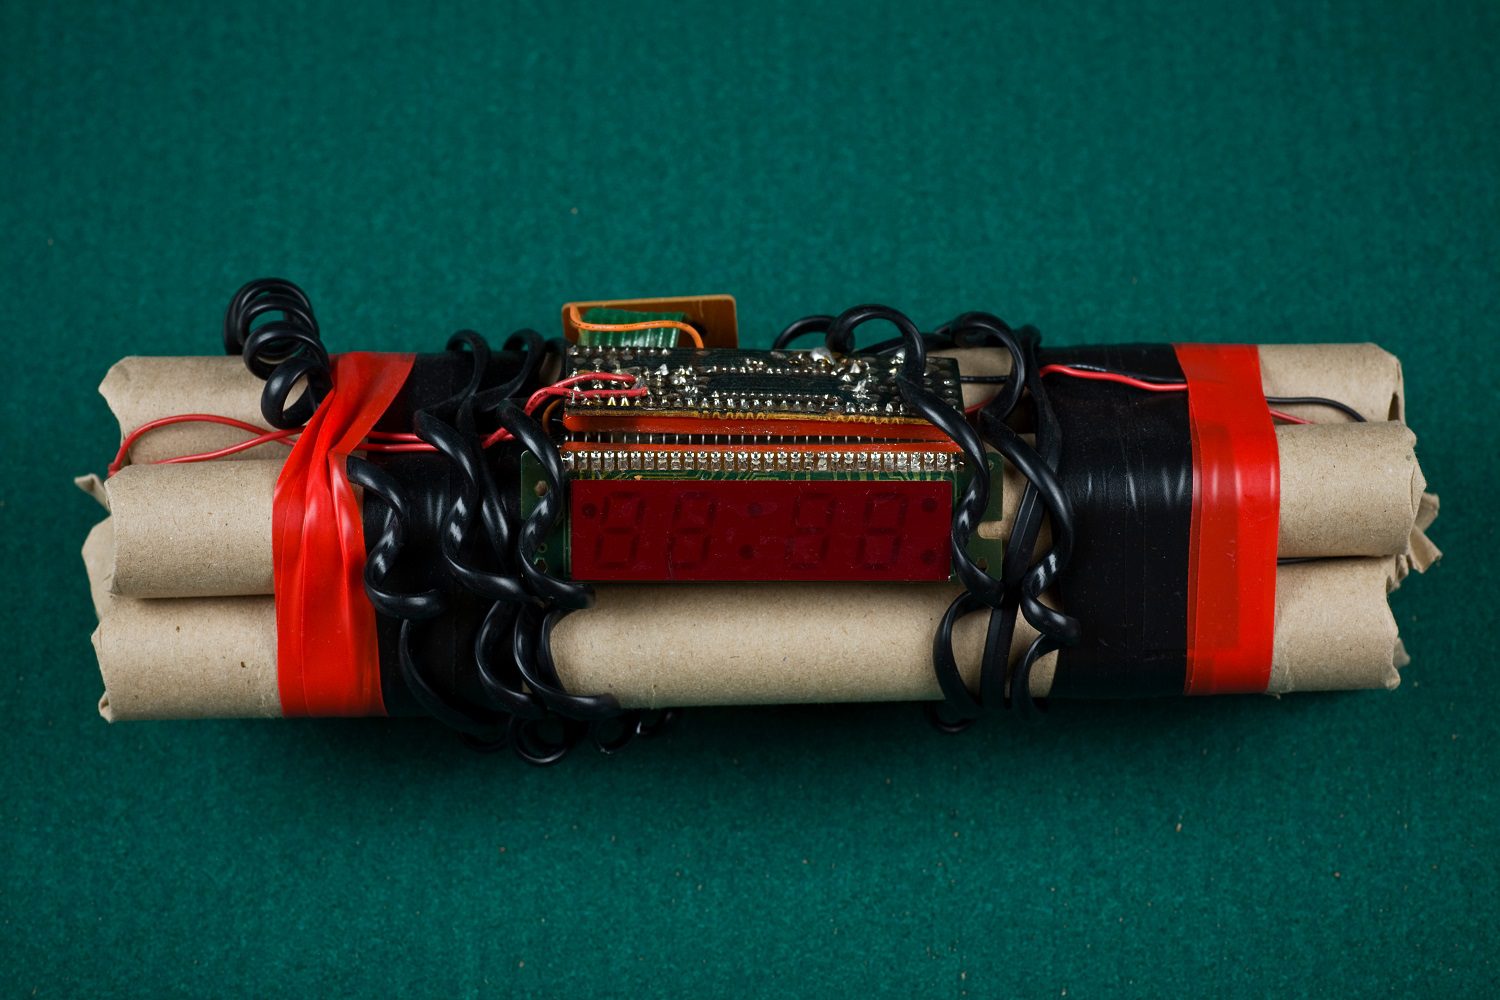 Una bomba casera, con cartuchos de dinamita, un temporizador digital, cables y cinta adhesiva.